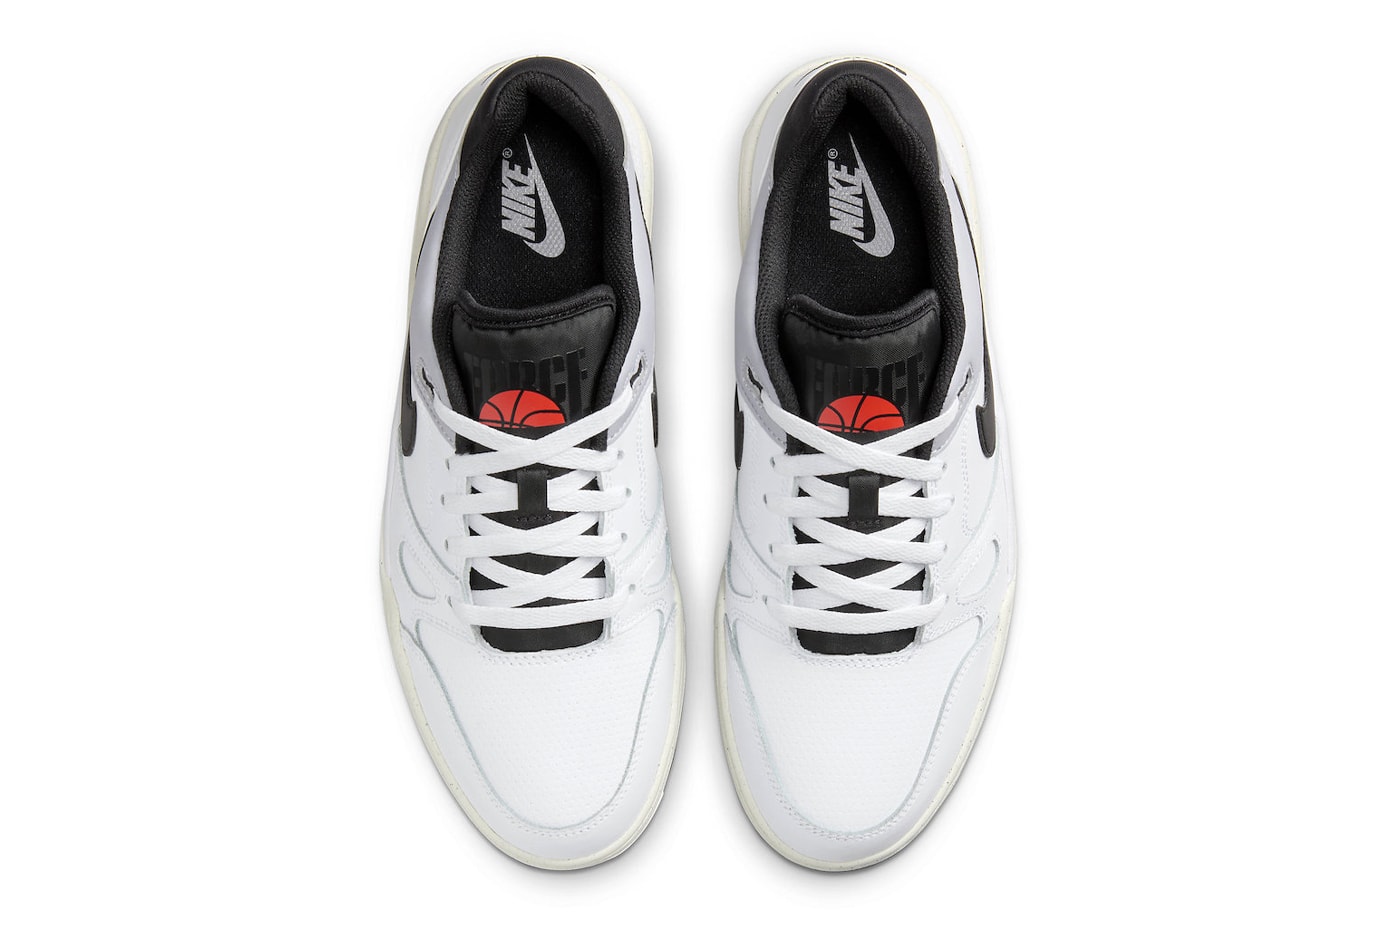 ナイキの新型モデル フル フォース ローから新たに “ホワイト/ブラック”が登場か Official Look Nike Full Force Low "White/Black" FB1362-101 swoosh white sneakers basketball